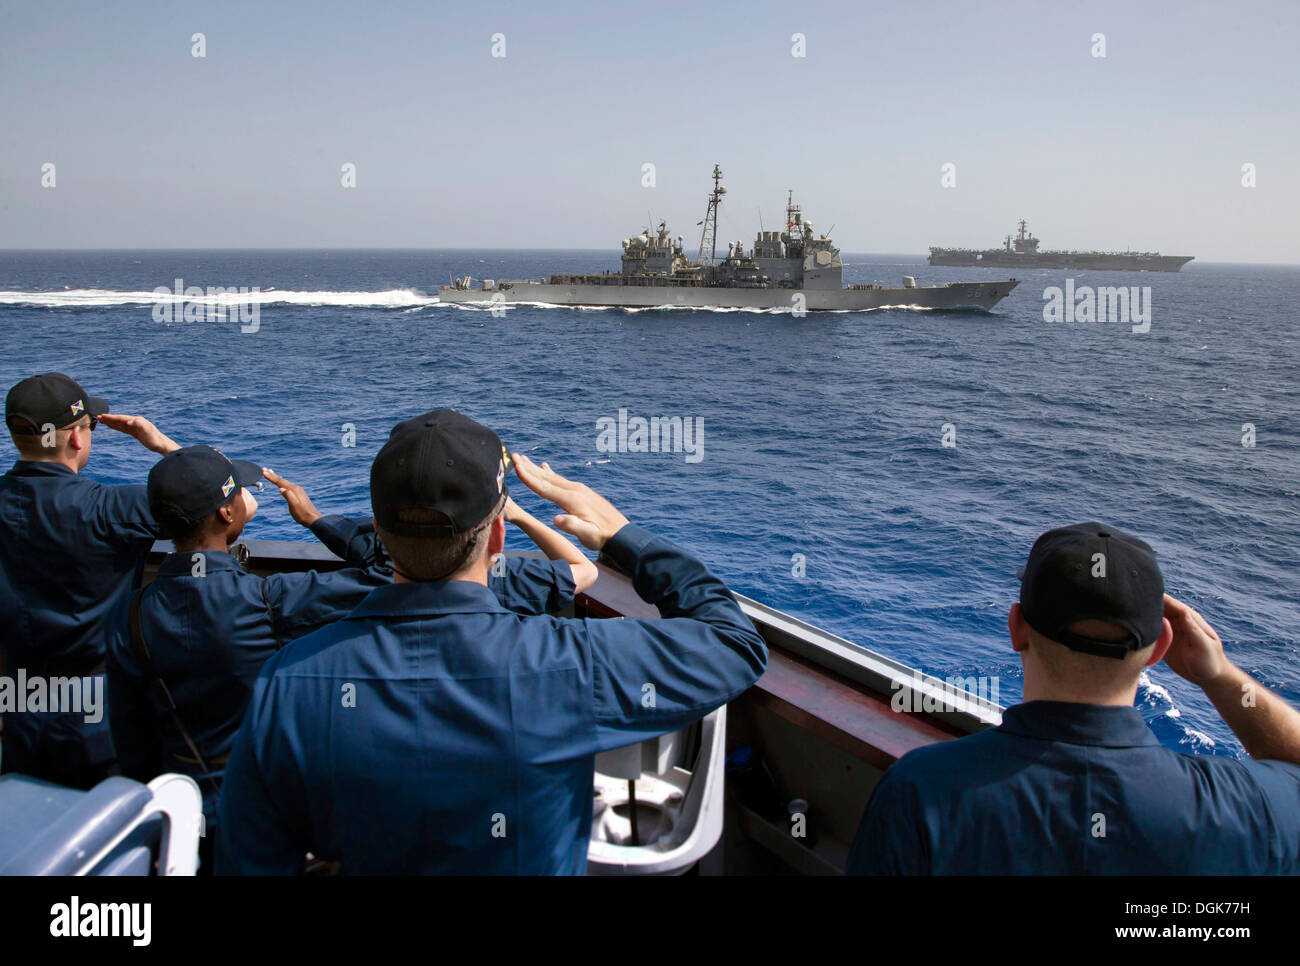 Le cmdr. Marques Wilson, commandant de l'USS destroyer lance-missiles Mason (DDG 87), en bas au centre, rend passant honneurs au croiseur lance-missiles USS San Jacinto (CG 56). Le porte-avions USS Nimitz (CVN 68), en haut à droite, garde les formati Banque D'Images